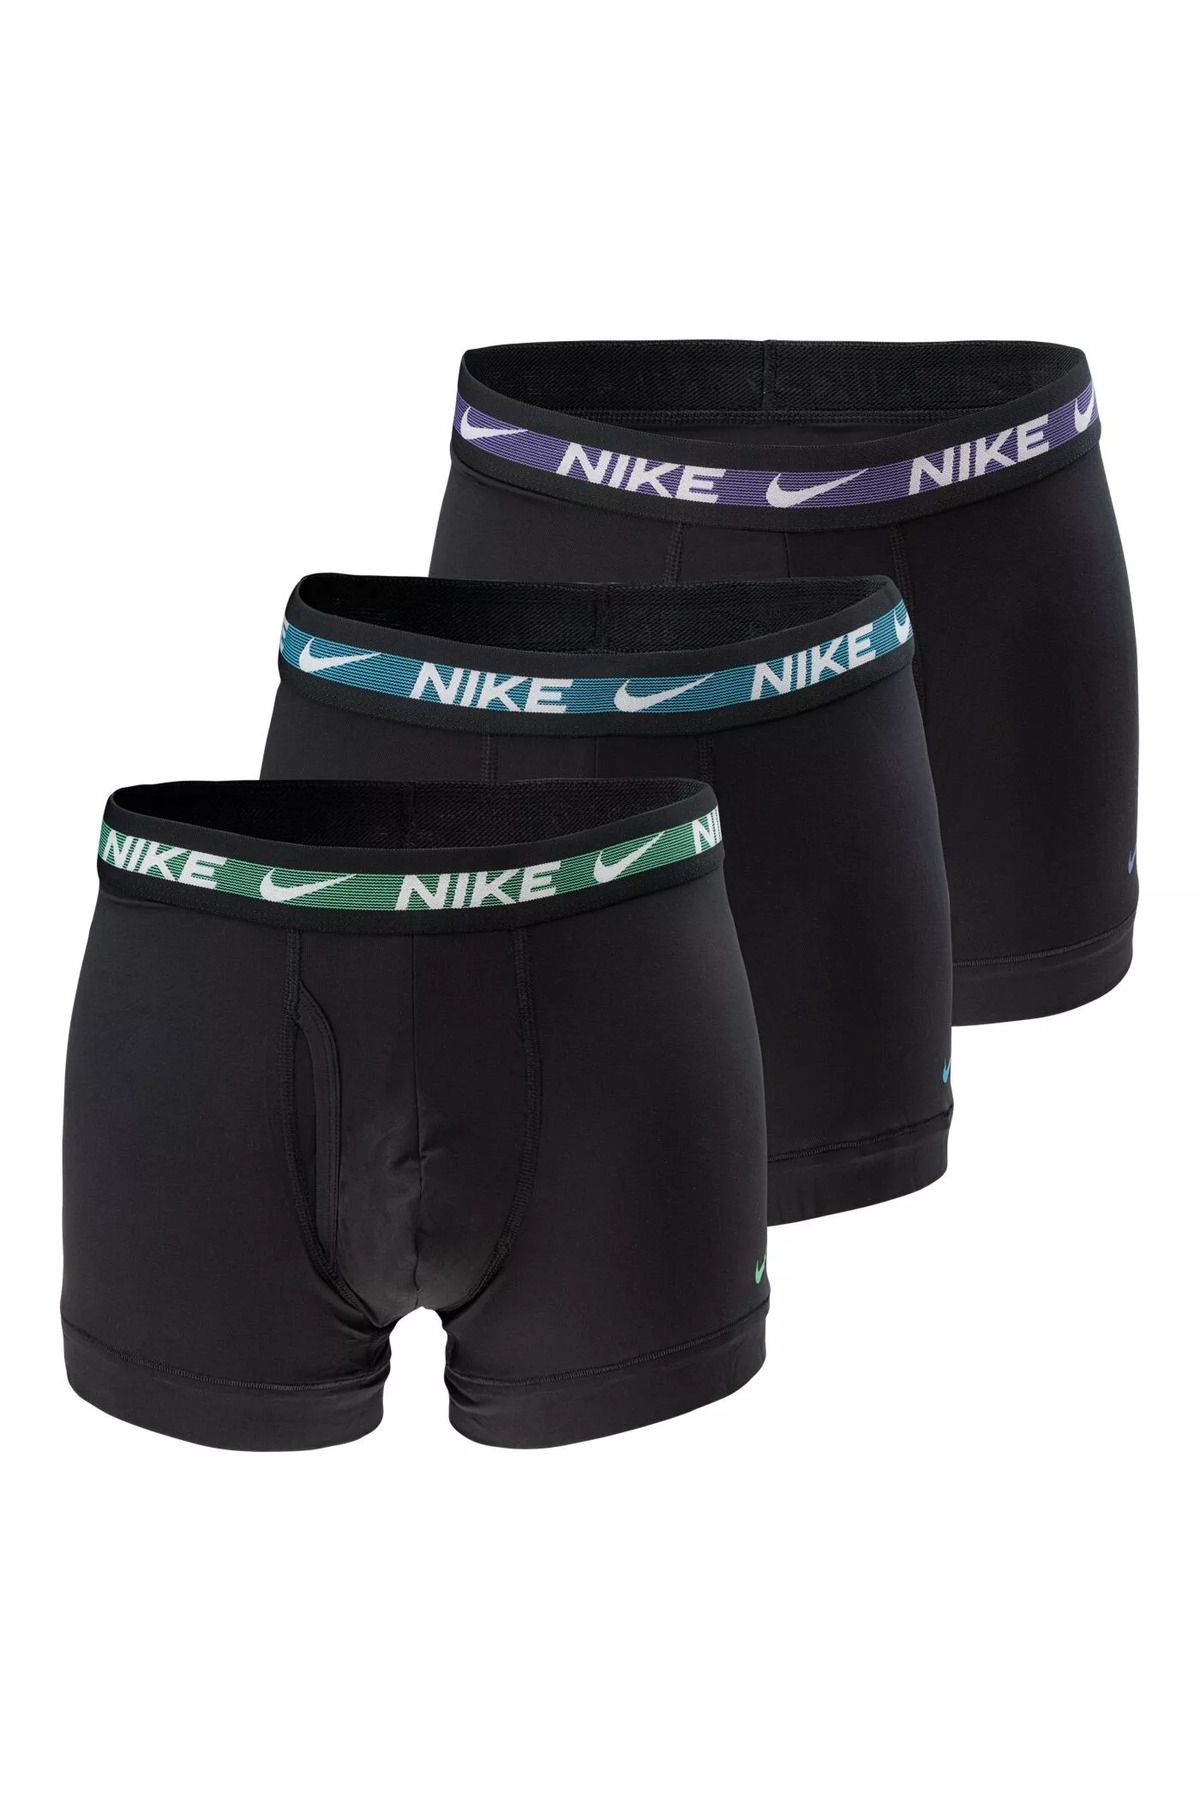 Nike Erkek Marka Logolu Elastik Bantlı Günlük Kullanıma Uygun Siyah Boxer 0000Ke1152-2Nv